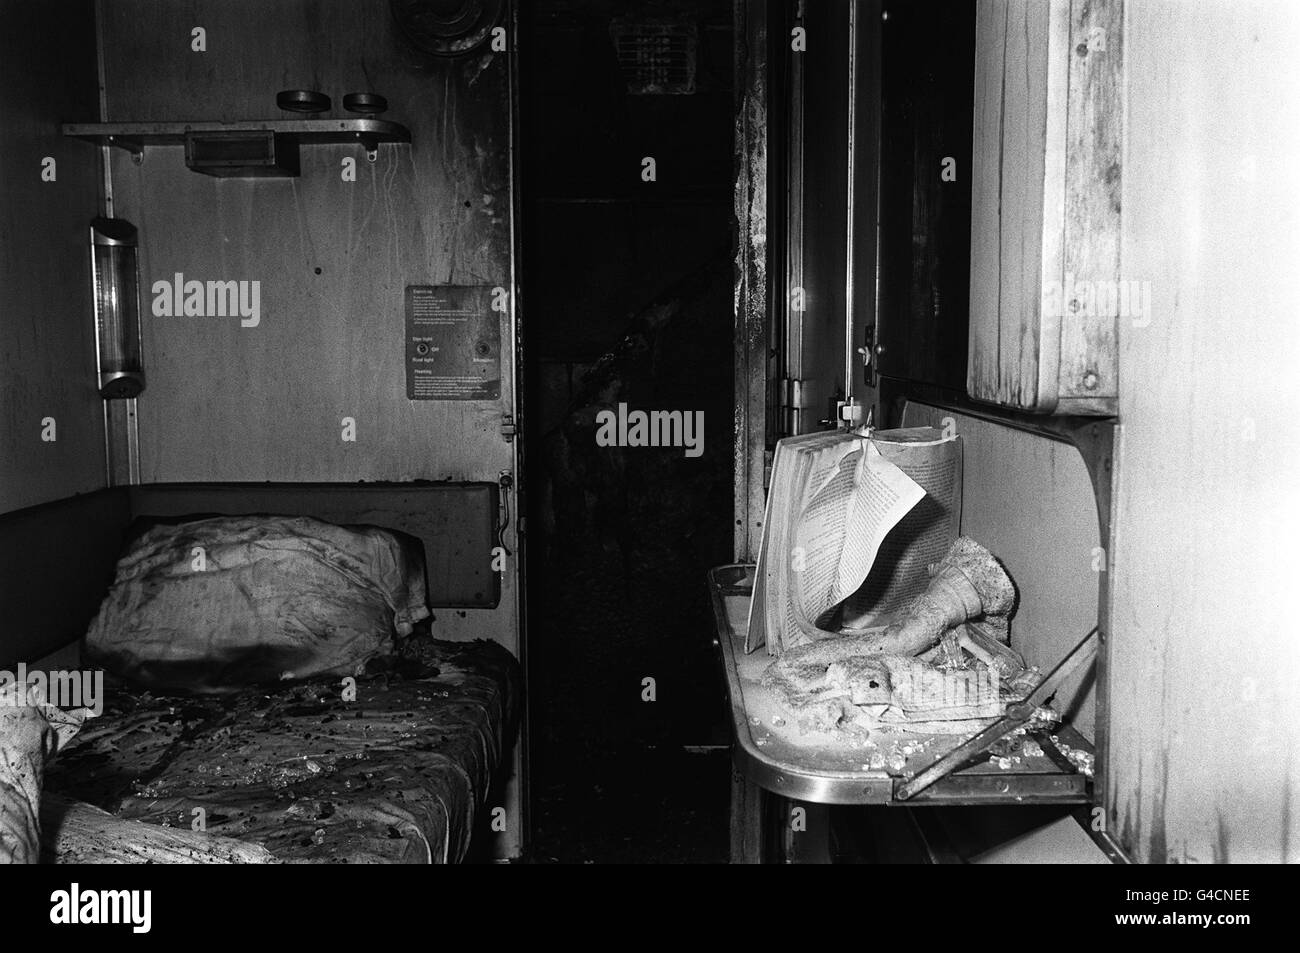 PA NEWS FOTO 6/7/78 il vano del sonno in un carrello del pernottamento PENZANCE-PADDINGTON traversina treno che improvvisamente travolto in fiamme quasi Taunton, Somerset Foto Stock